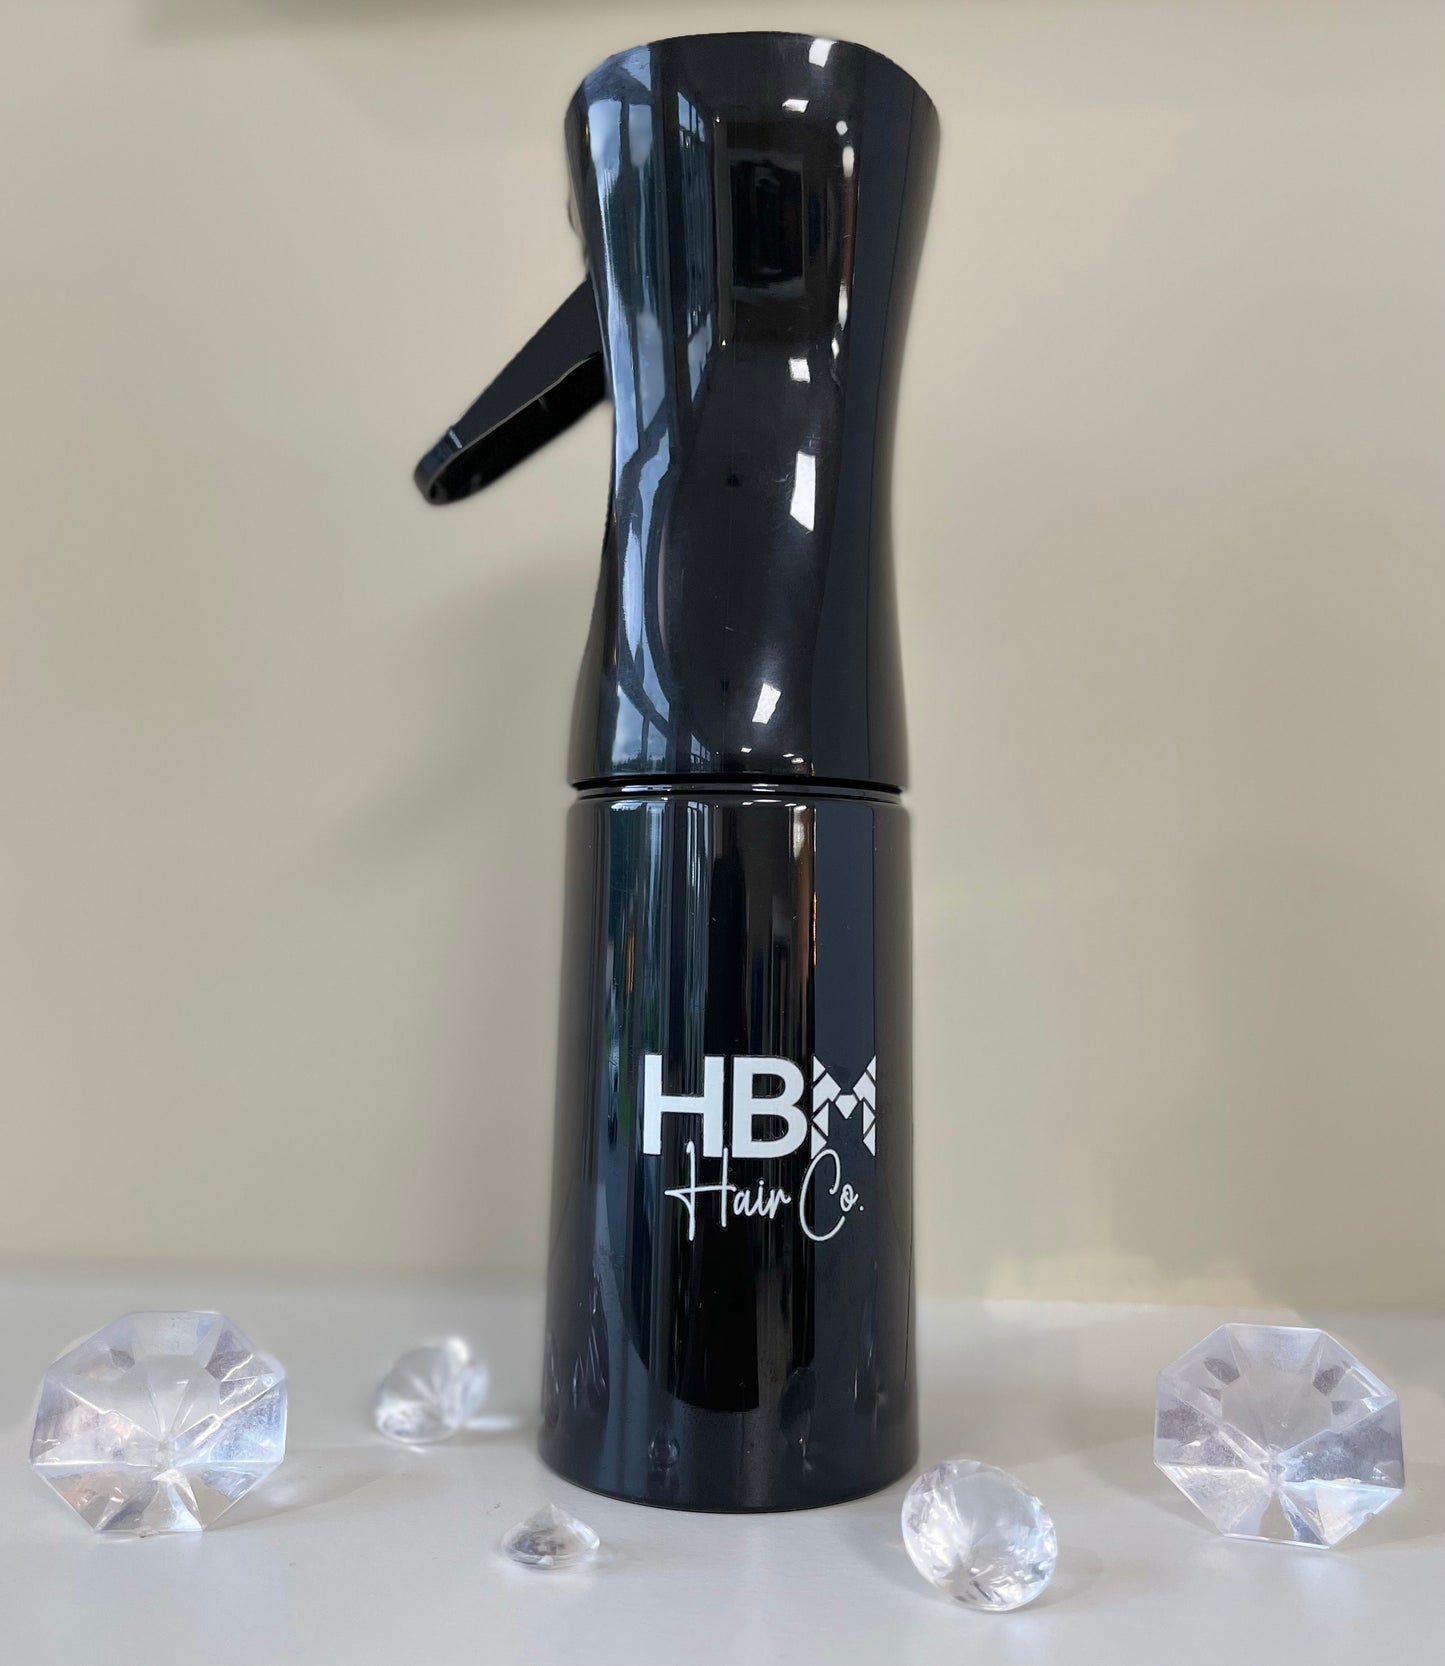 HBM “Mist Me” Spray Bottle